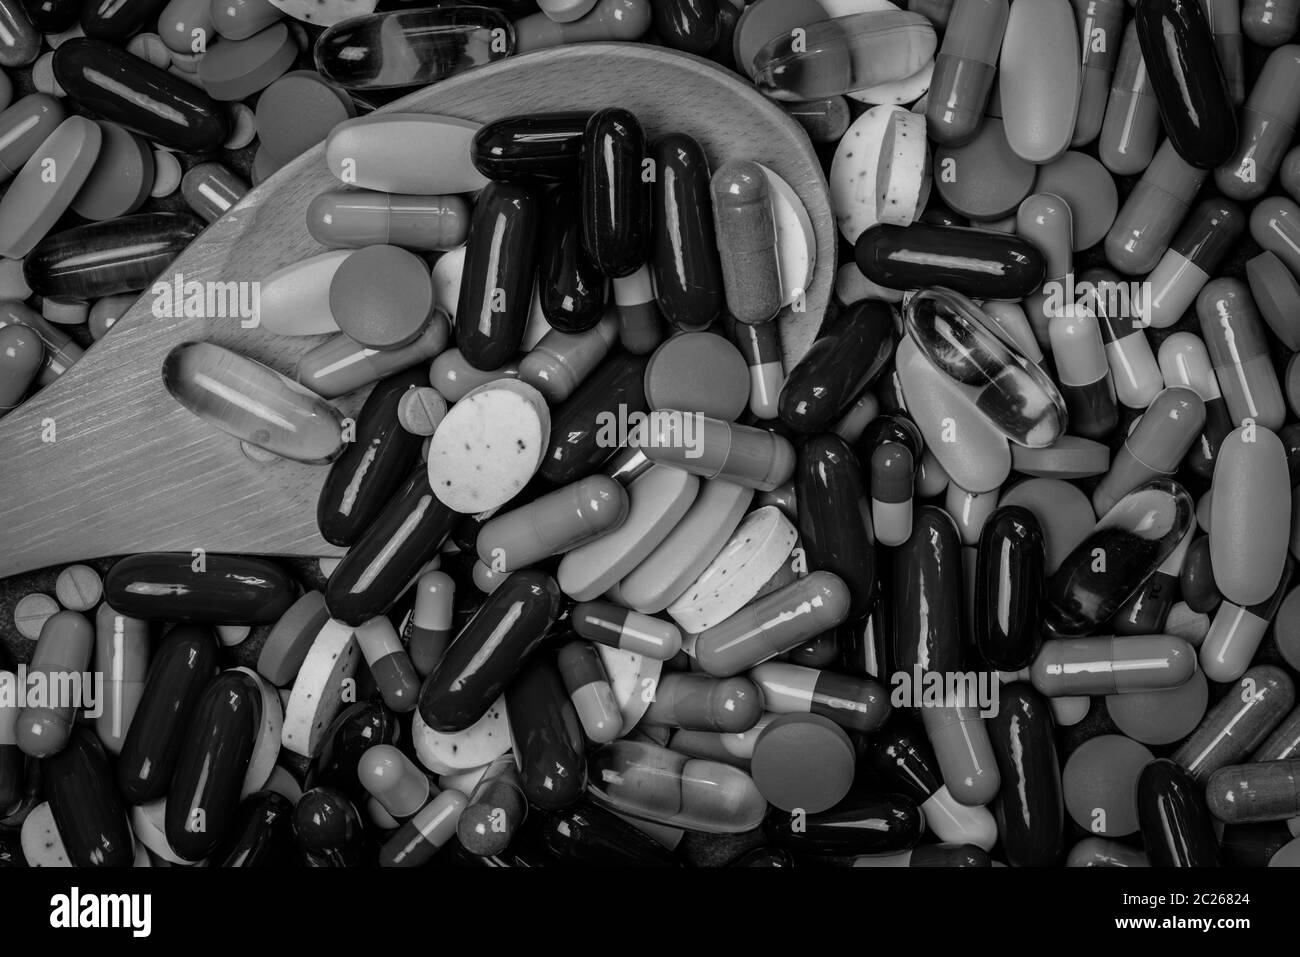 Viele von Tabletten und Kapseln, Pillen und Holz Löffel in schwarz-weiß Bild. Droge Übernutzung und Überdosierung Konzept. Drogenkonsum bei älteren Menschen mit chron Stockfoto